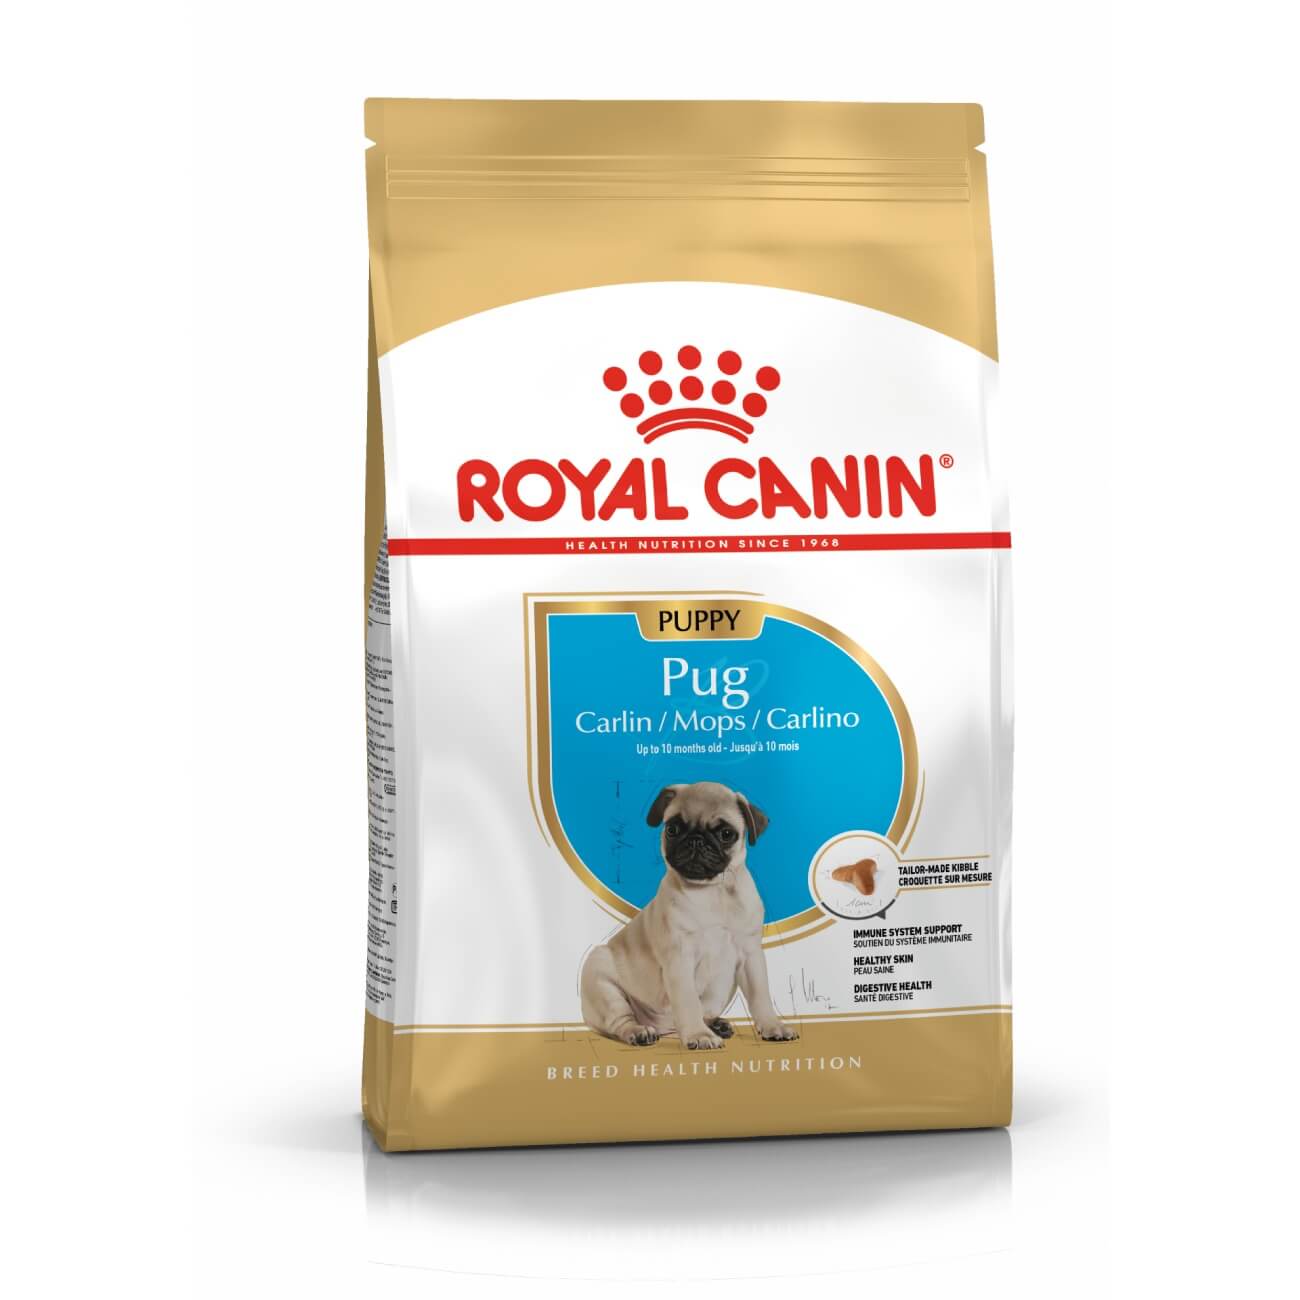 Royal Canin Pug Puppy - suha hrana za...